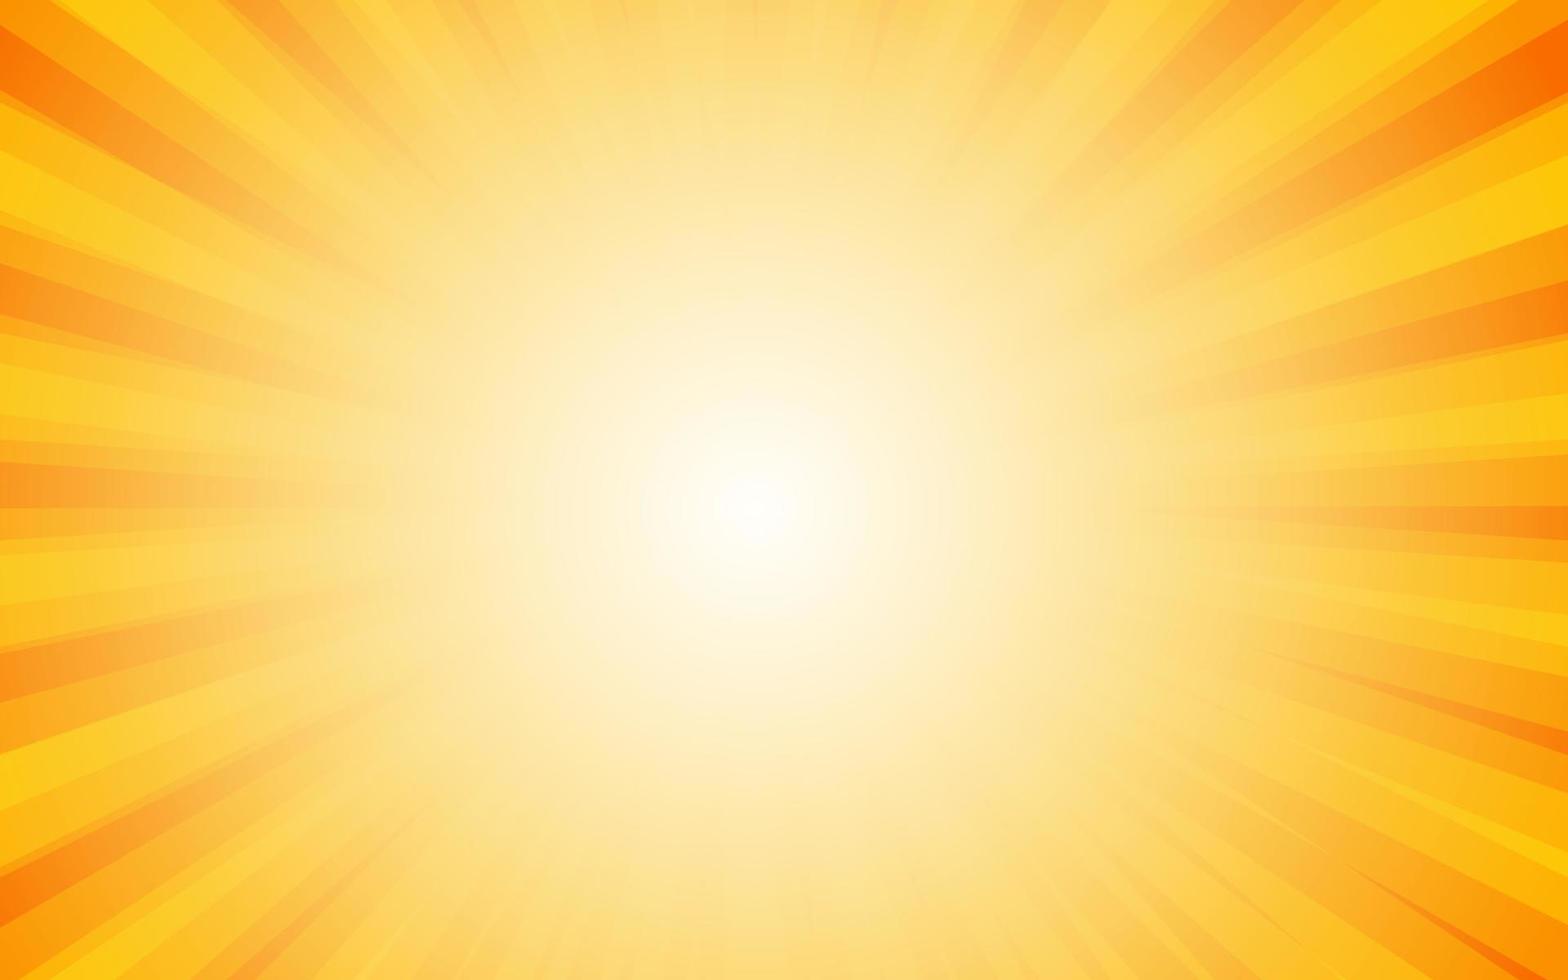 raios de sol estilo vintage retrô em fundo amarelo, fundo de padrão sunburst. raios. ilustração vetorial de banner de verão vetor